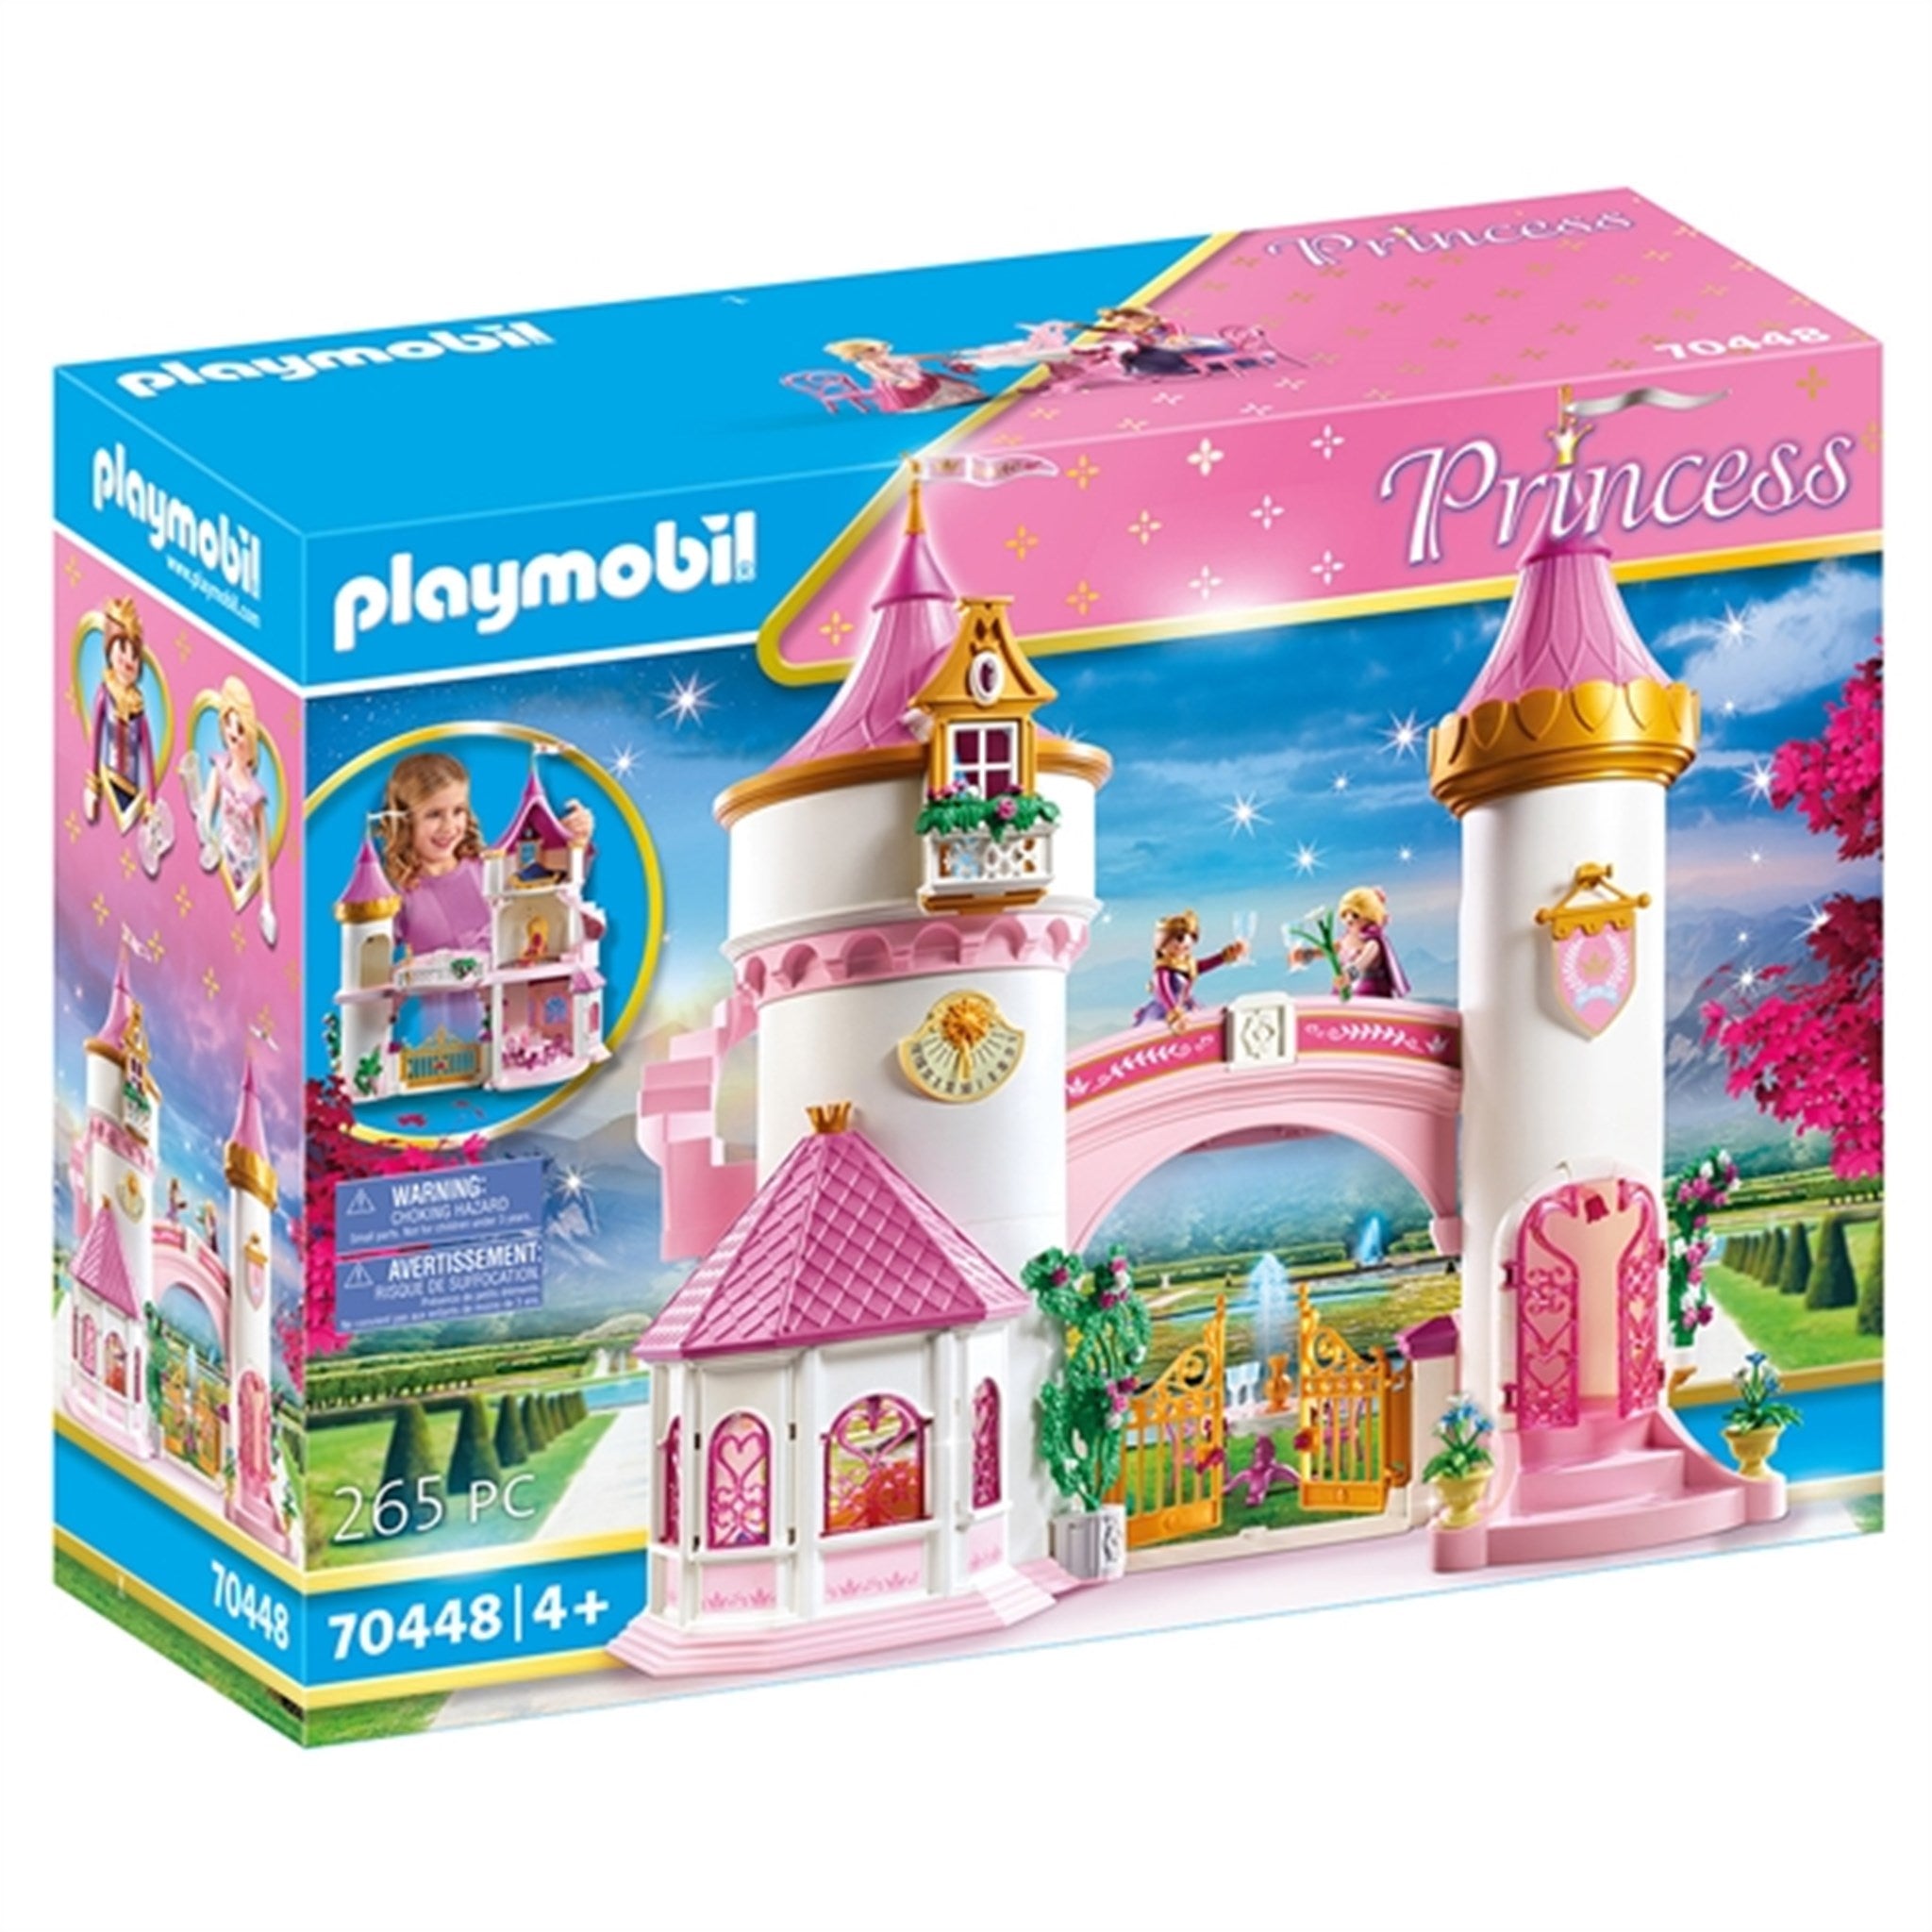 Playmobil® Princess - Prinsesseslot